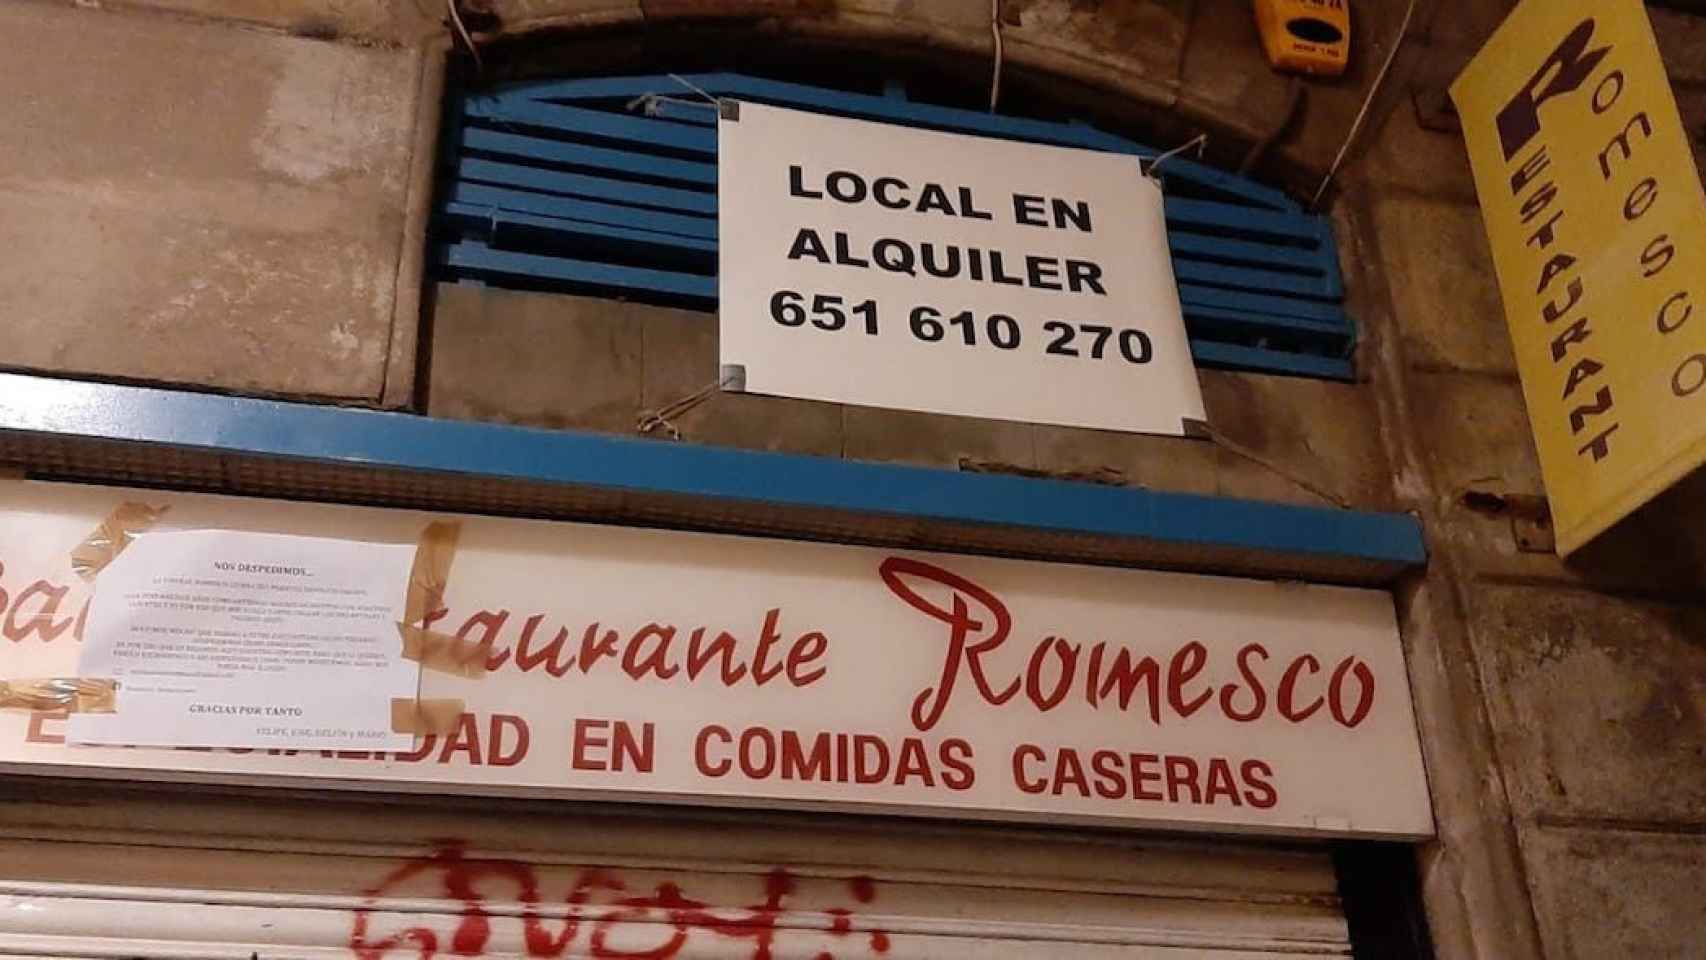 El restaurante Romesco, cerrado y ya en alquiler debido a la crisis derivada de la pandemia/ CEDIDA